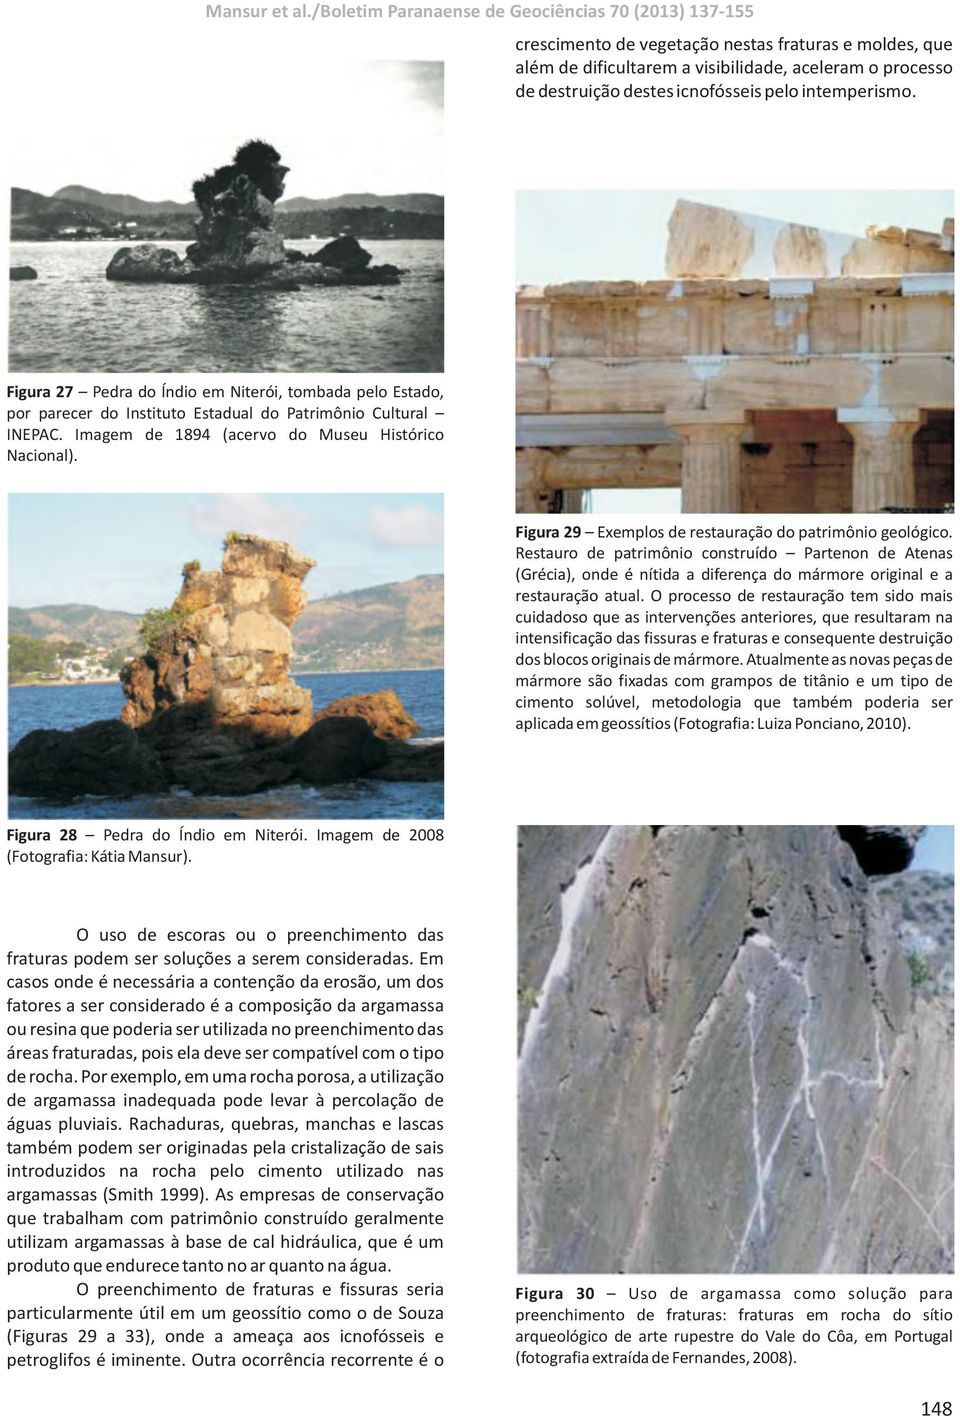 Figura 29 Exemplos de restauração do patrimônio geológico. Restauro de patrimônio construído Partenon de Atenas (Grécia), onde é nítida a diferença do mármore original e a restauração atual.